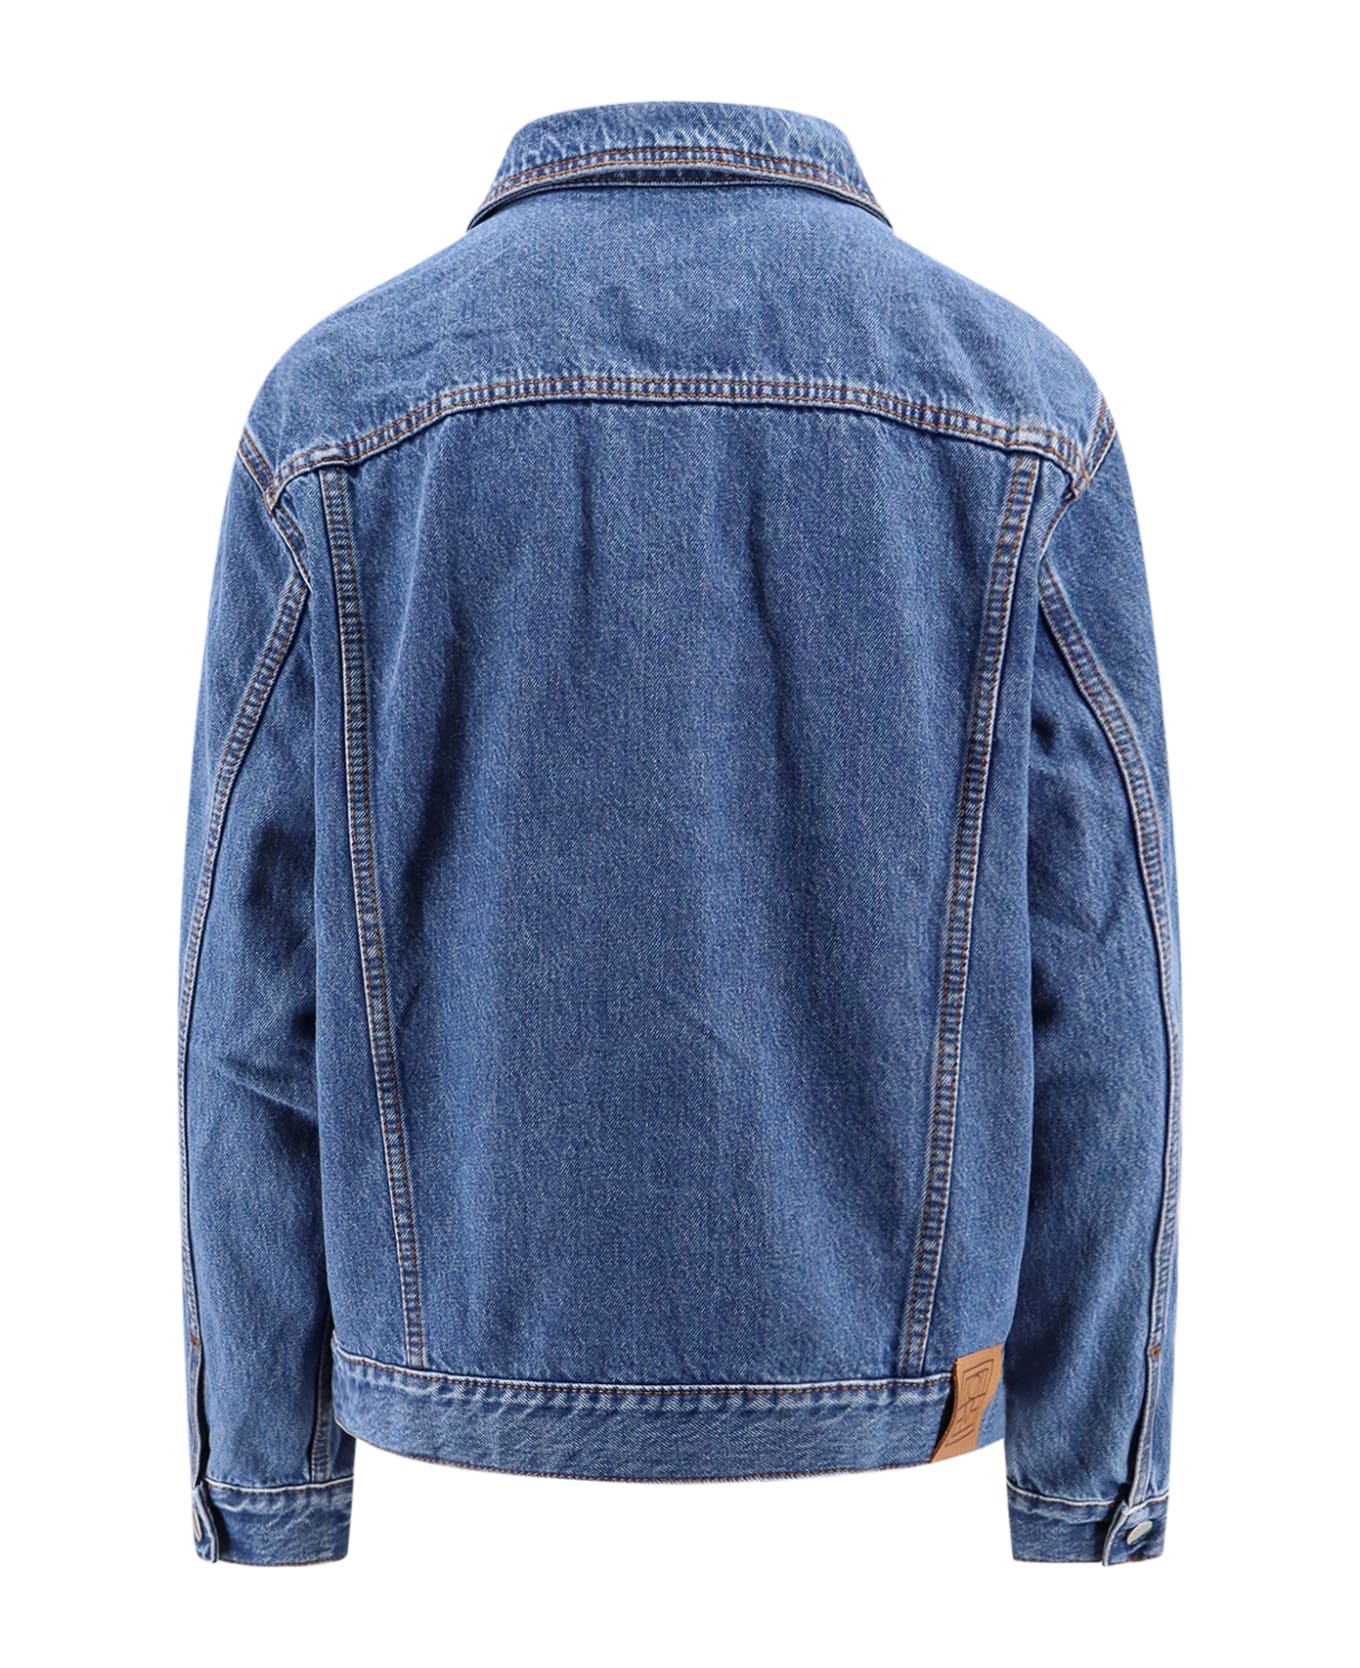 Totême Jacket - DENIM BLUE ジャケット